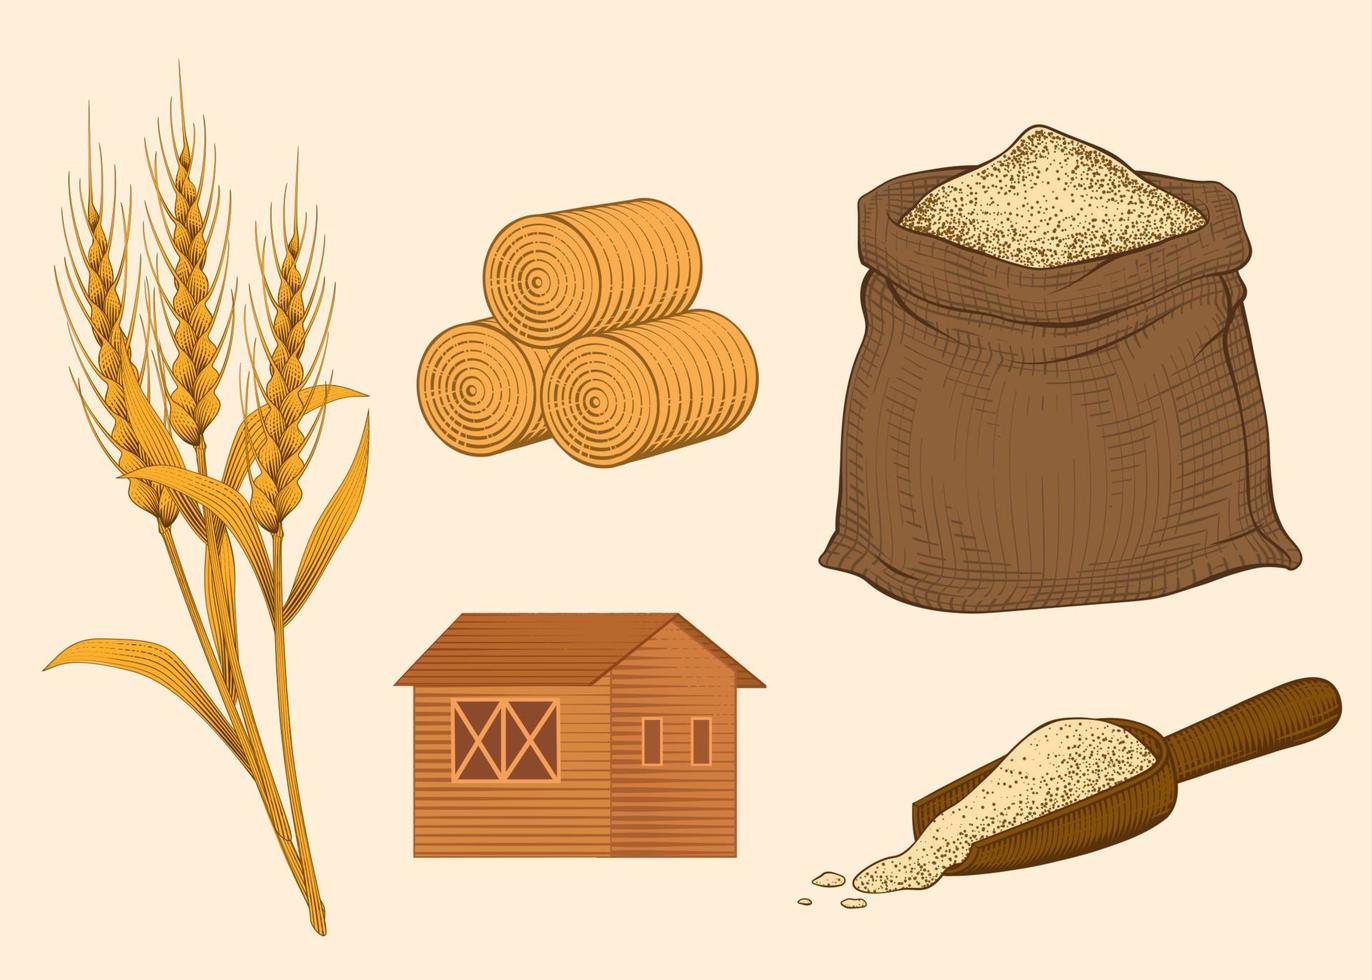 éléments agricoles gravés de paille de blé, botte de foin, sac de poudre, grange et pelle en bois vecteur